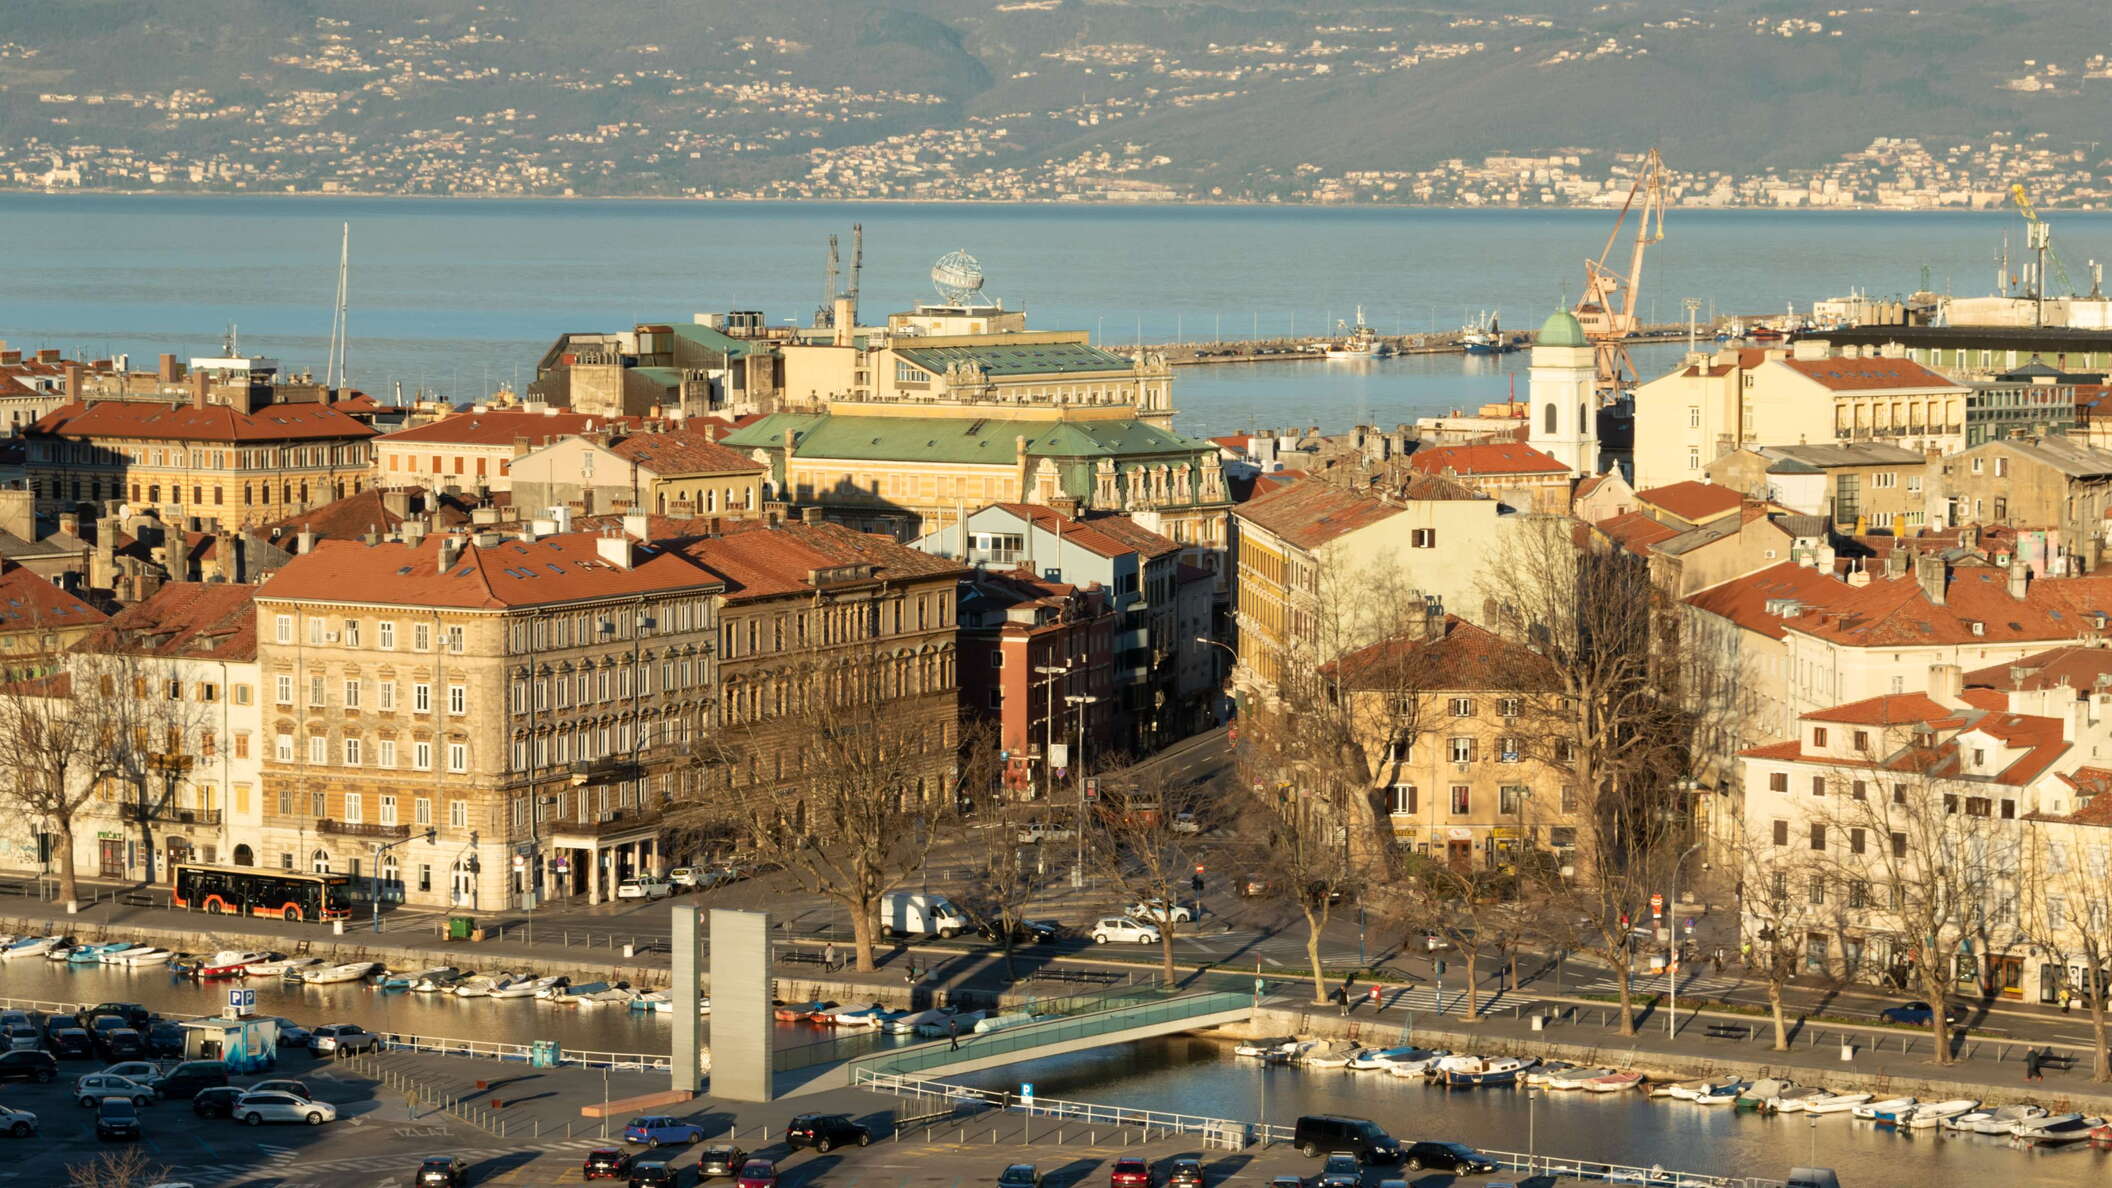 Rijeka | City centre with Jelačićev trg